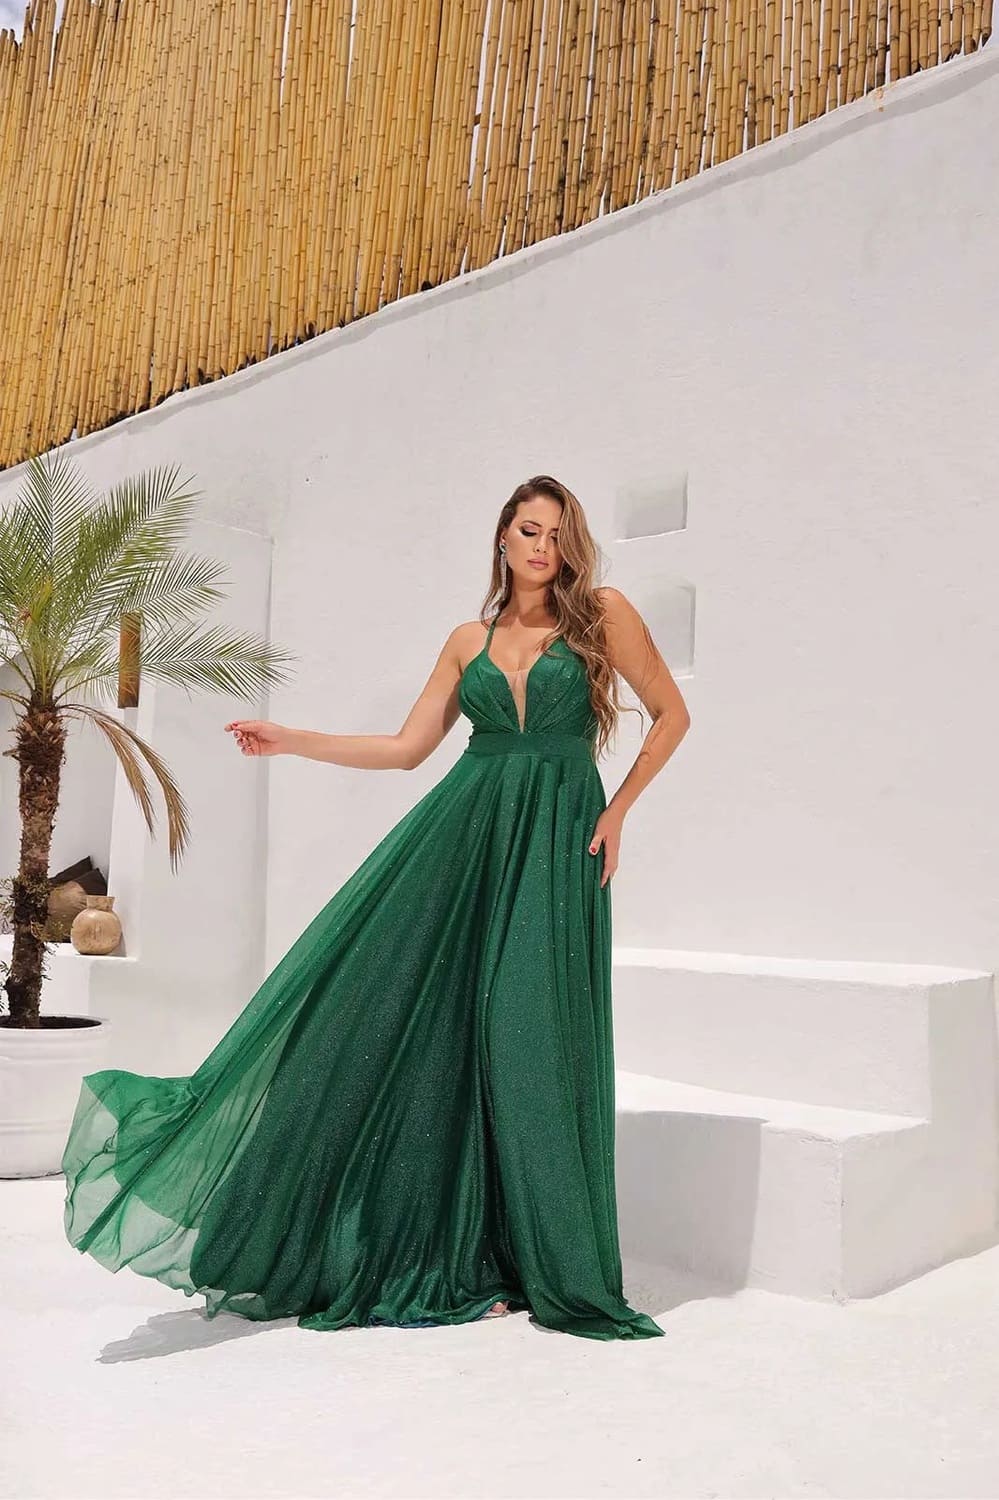 Vestido Longo de Festa Premium para Madrinhas Eduarda Micro Tule Verde Esmeralda